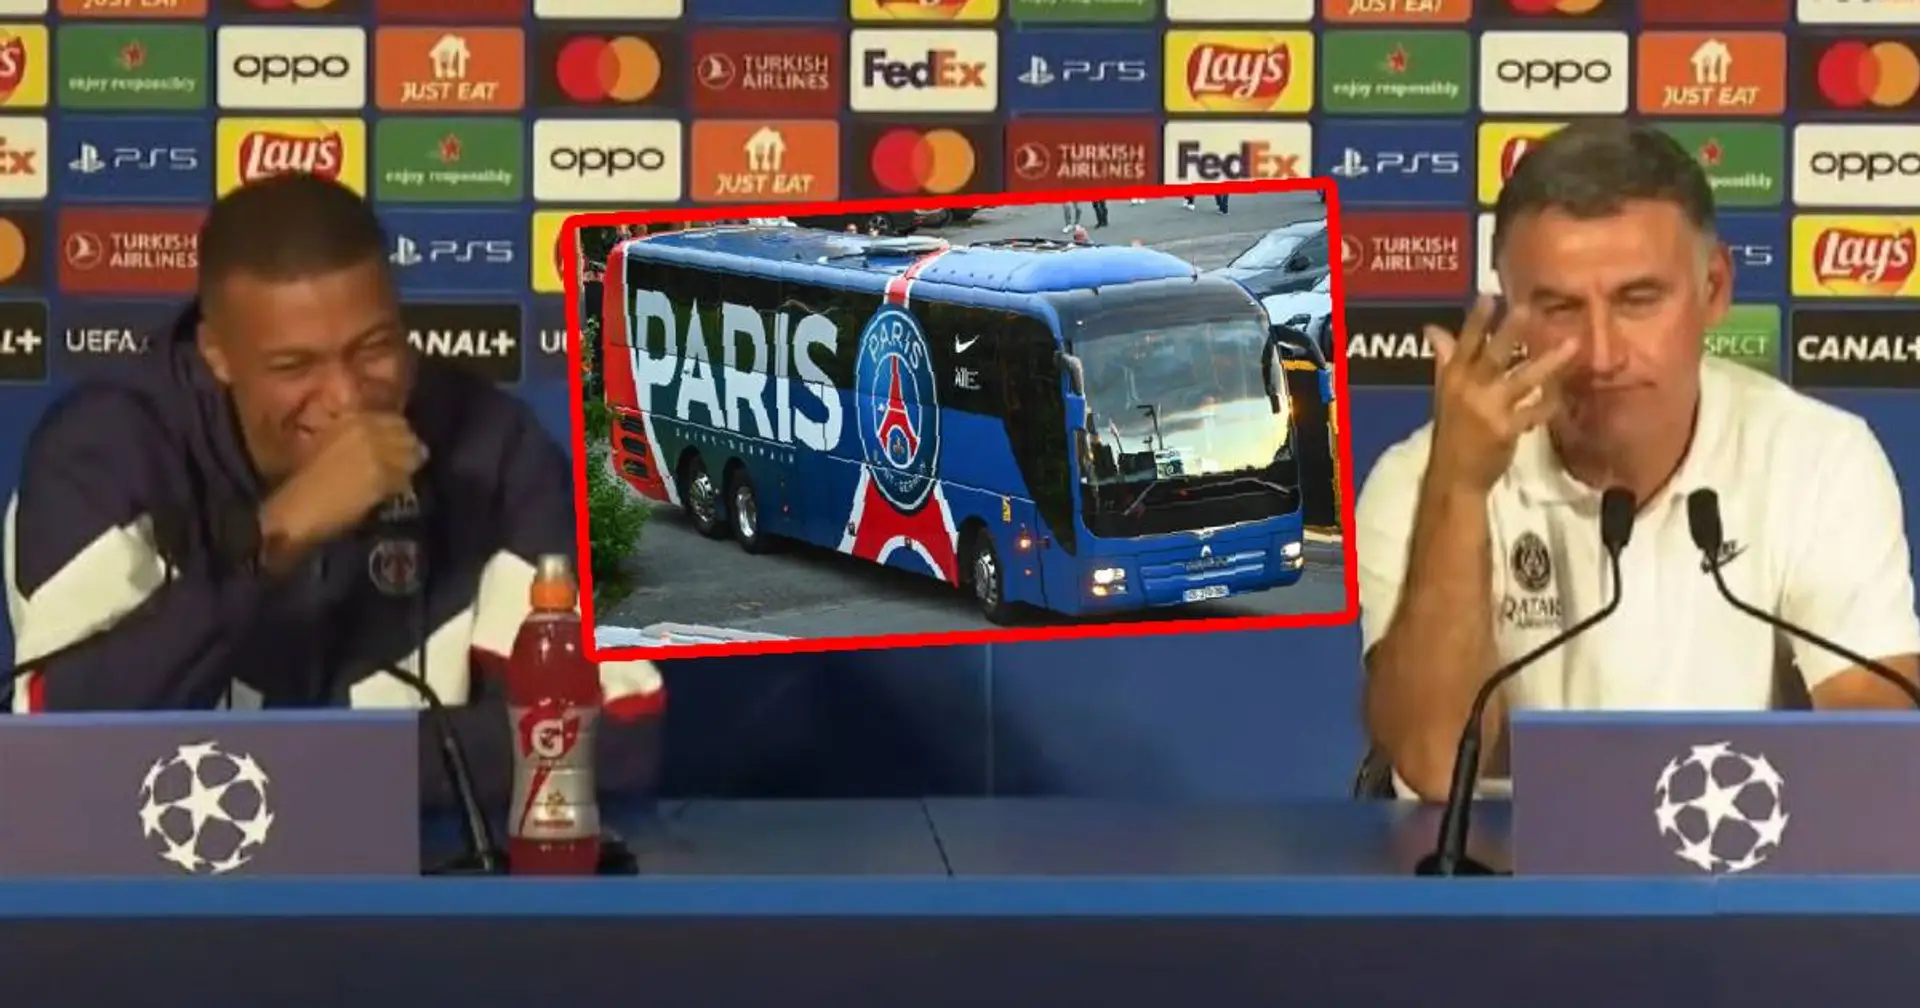 "En pleine pénurie d'essence" : un fan ironise sur le déplacement à Reims du PSG en bus et tacle les haters du club